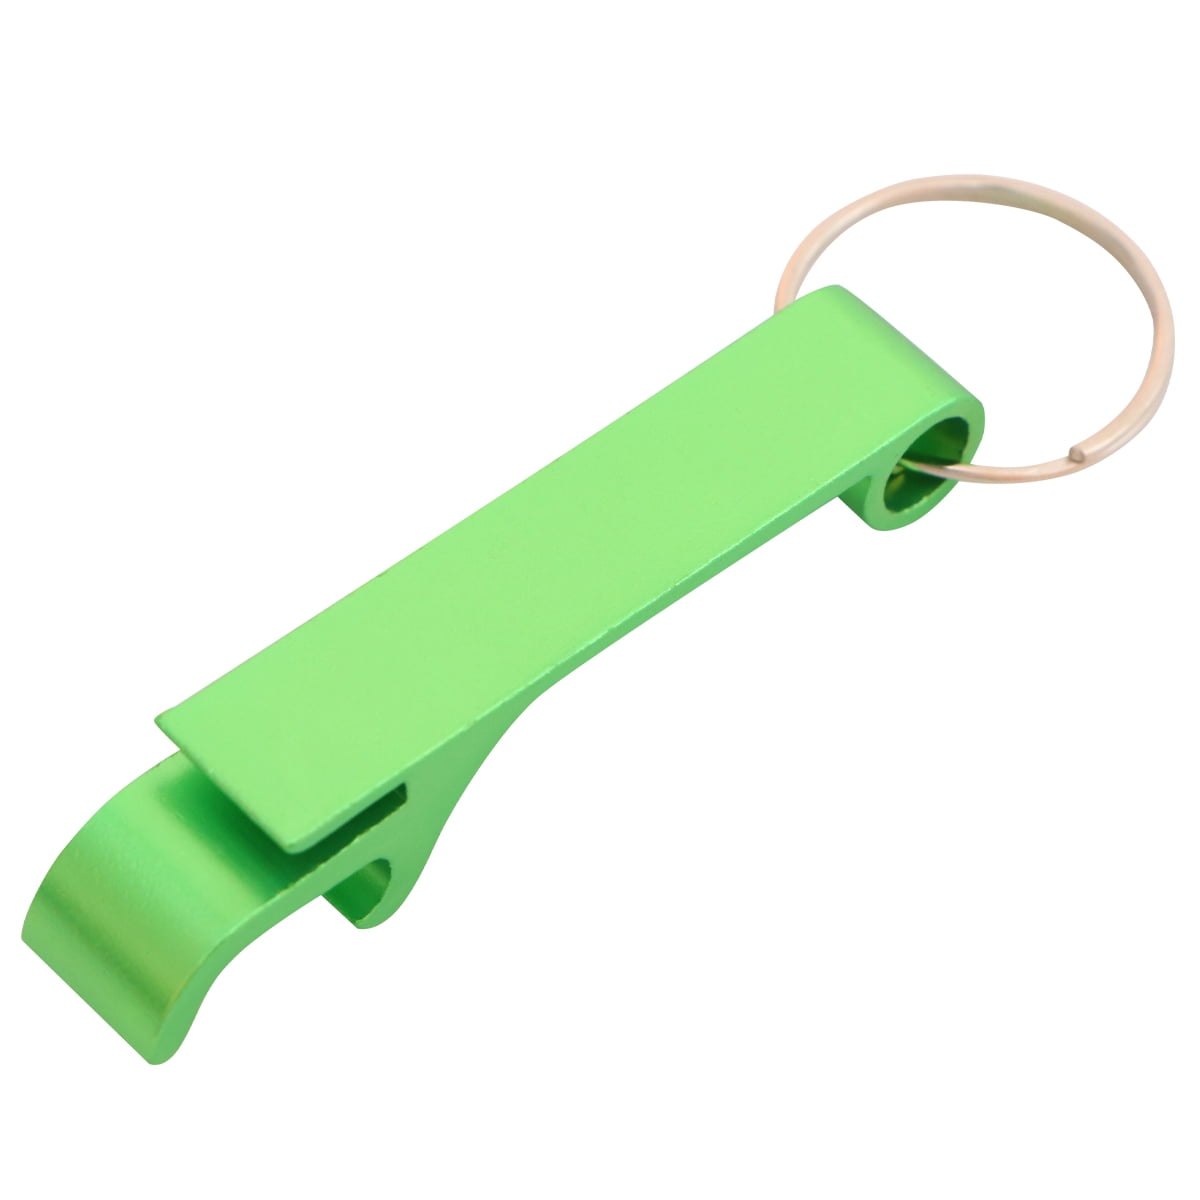 Details about   Brass EDC Keychain Beer Bottle Opener Pocket keyring Portable Bar Tool Hot 